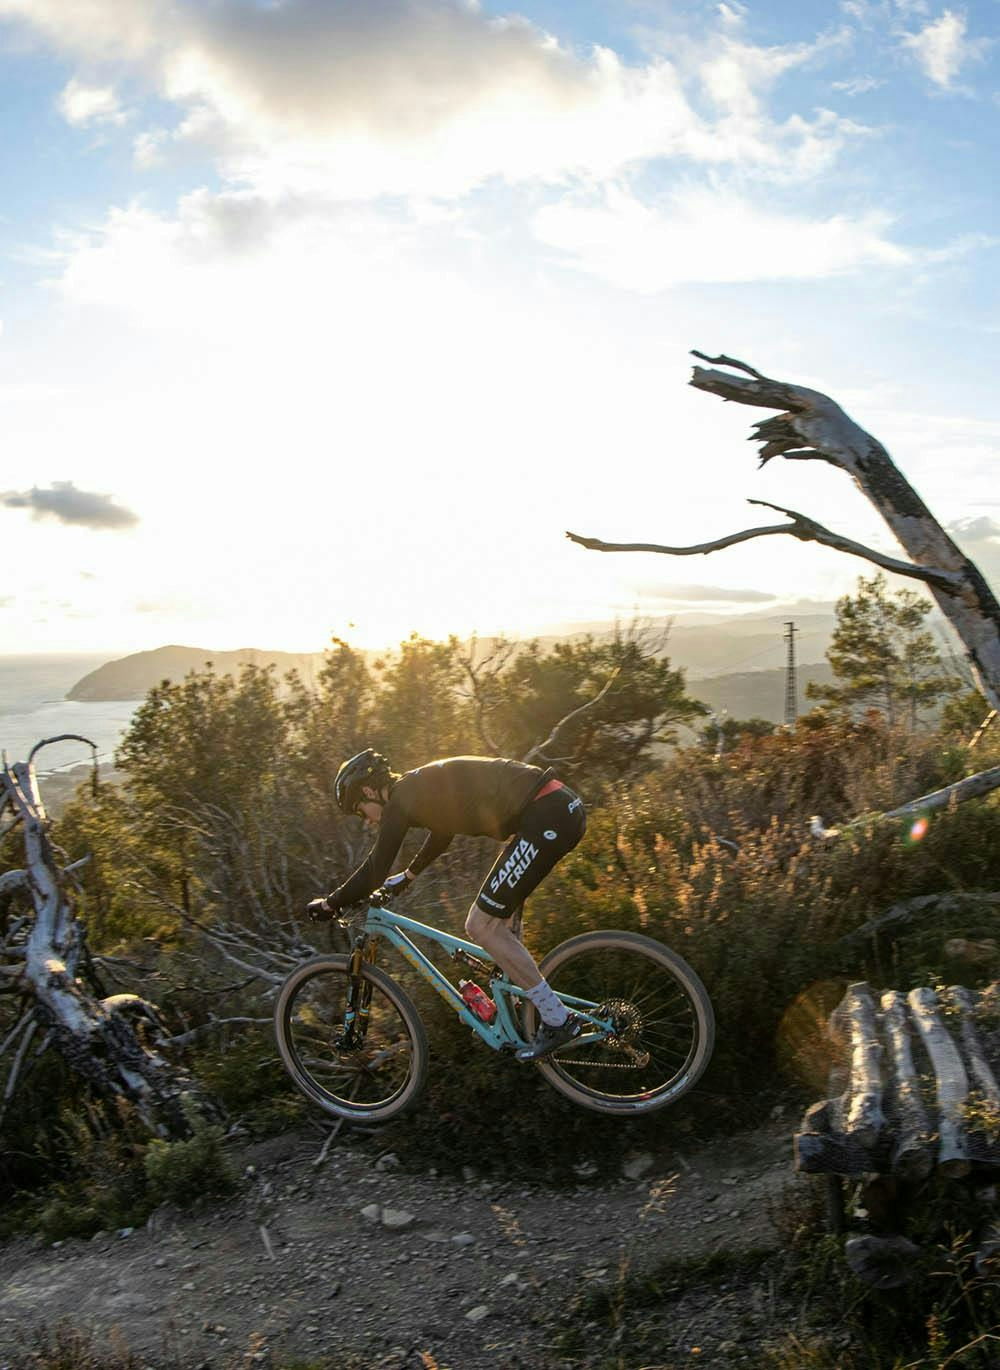 Luca Braidot hitting a jump on his Blur mountain bike